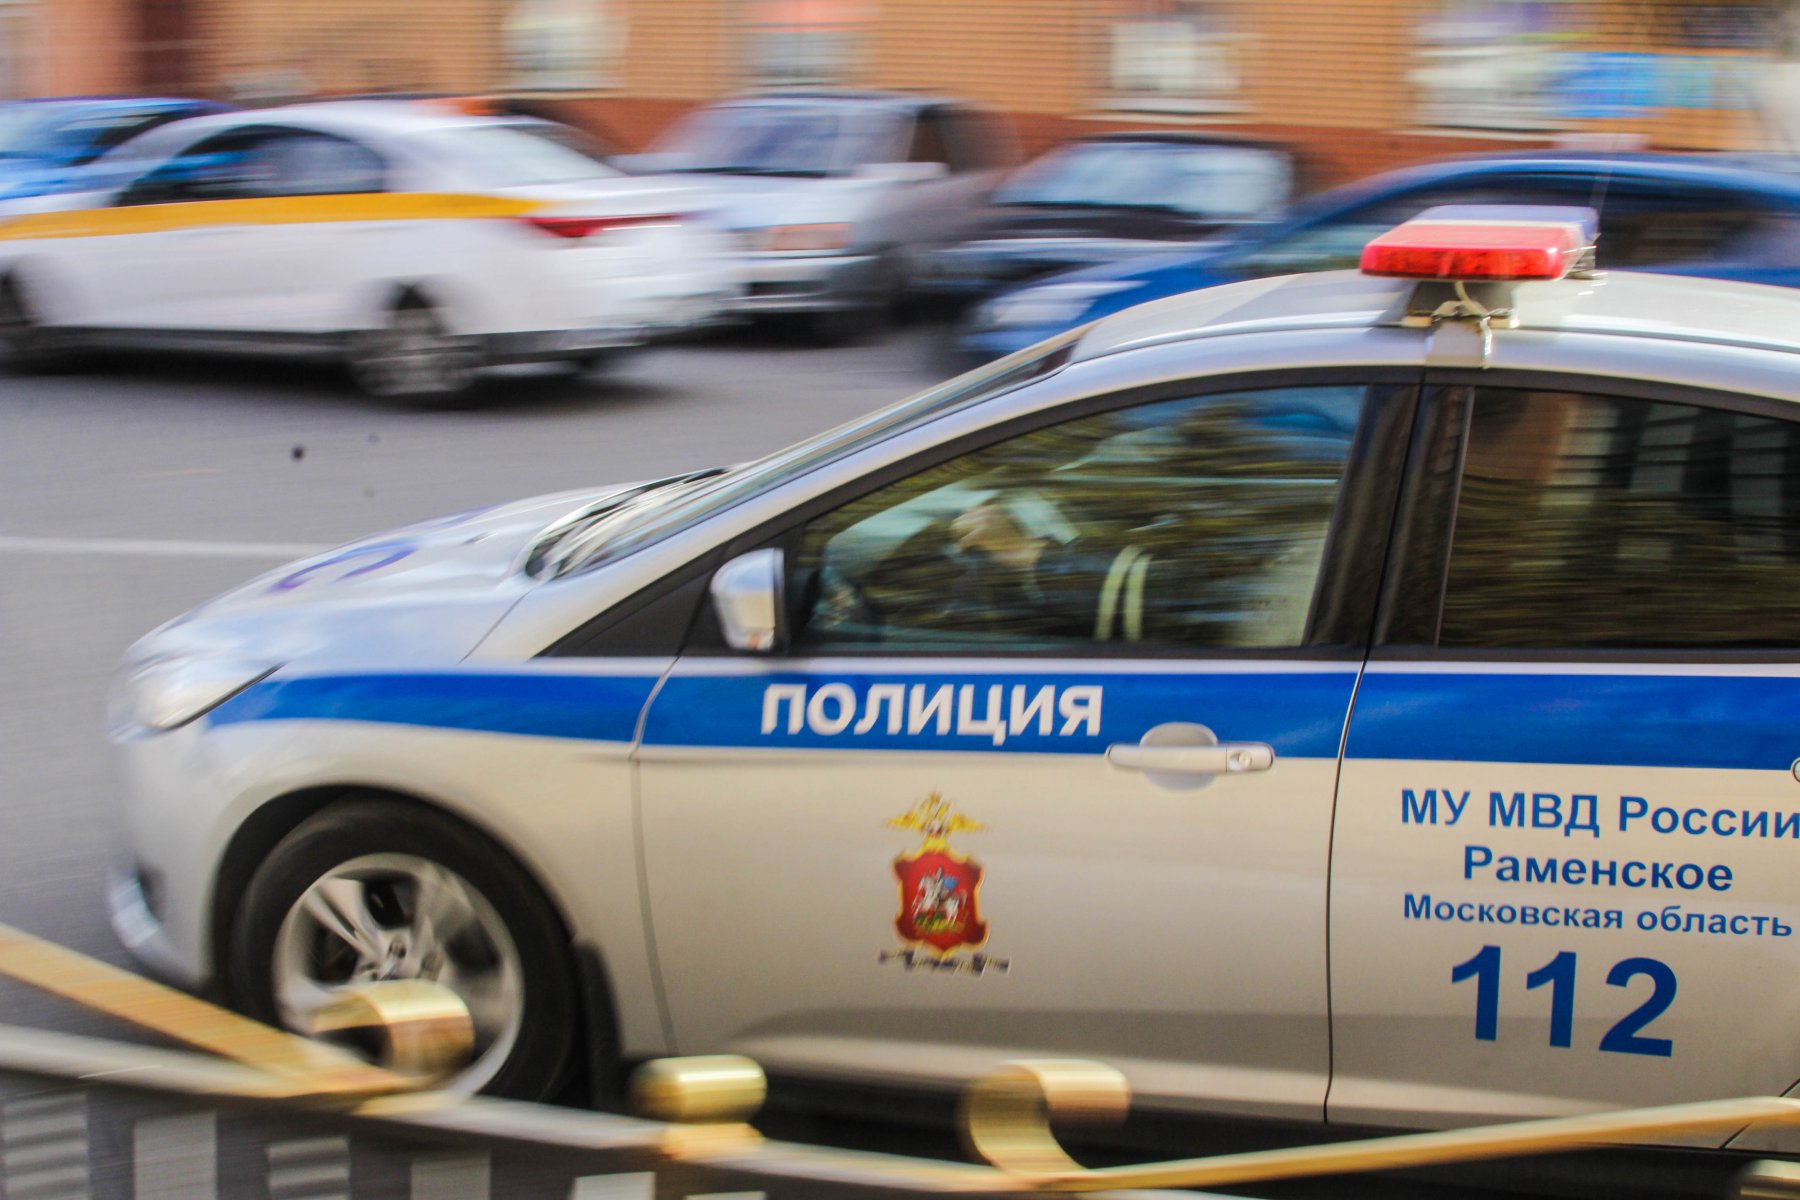 Полицейские проведут расследование аварии в Богородском округе, в которой пострадали пассажирки «Газели» 